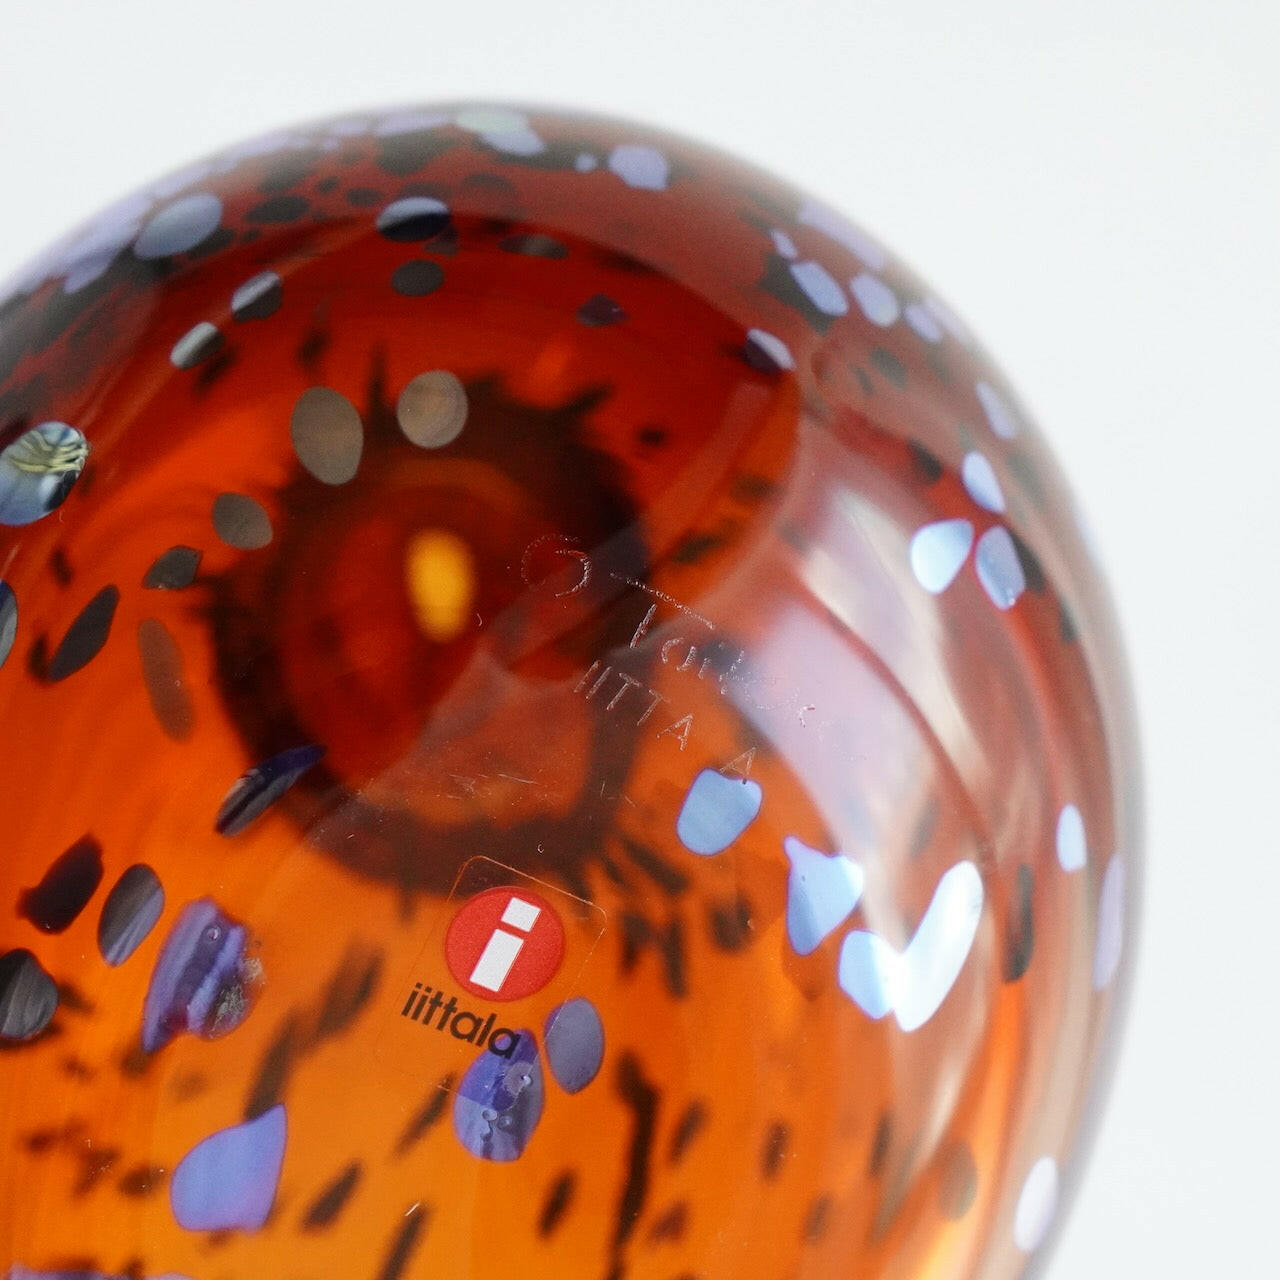 イッタラ オイヴァ・トイッカ（Oiva Toikka）復刻版 ペッカシーニ ブラウン ガラスの置物